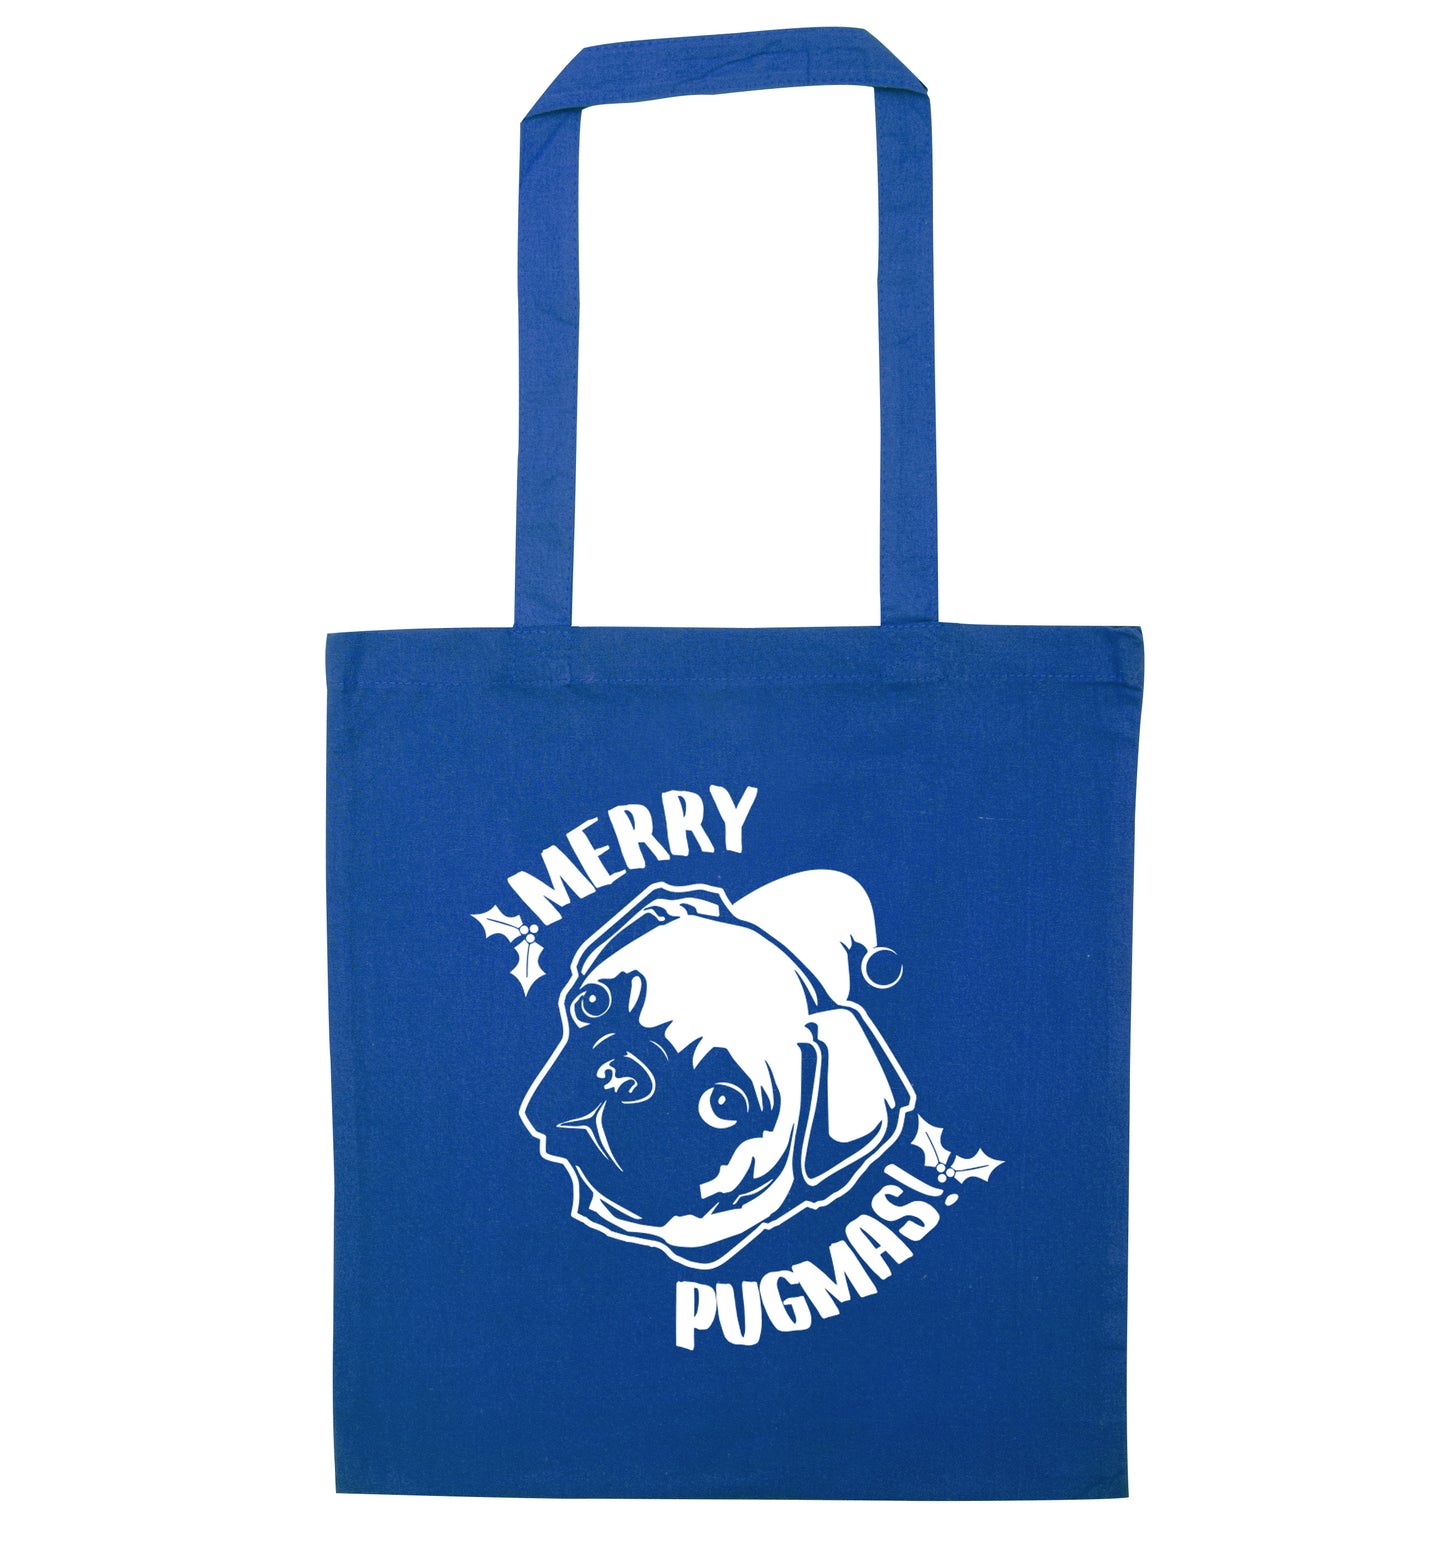 Merry Pugmas blue tote bag